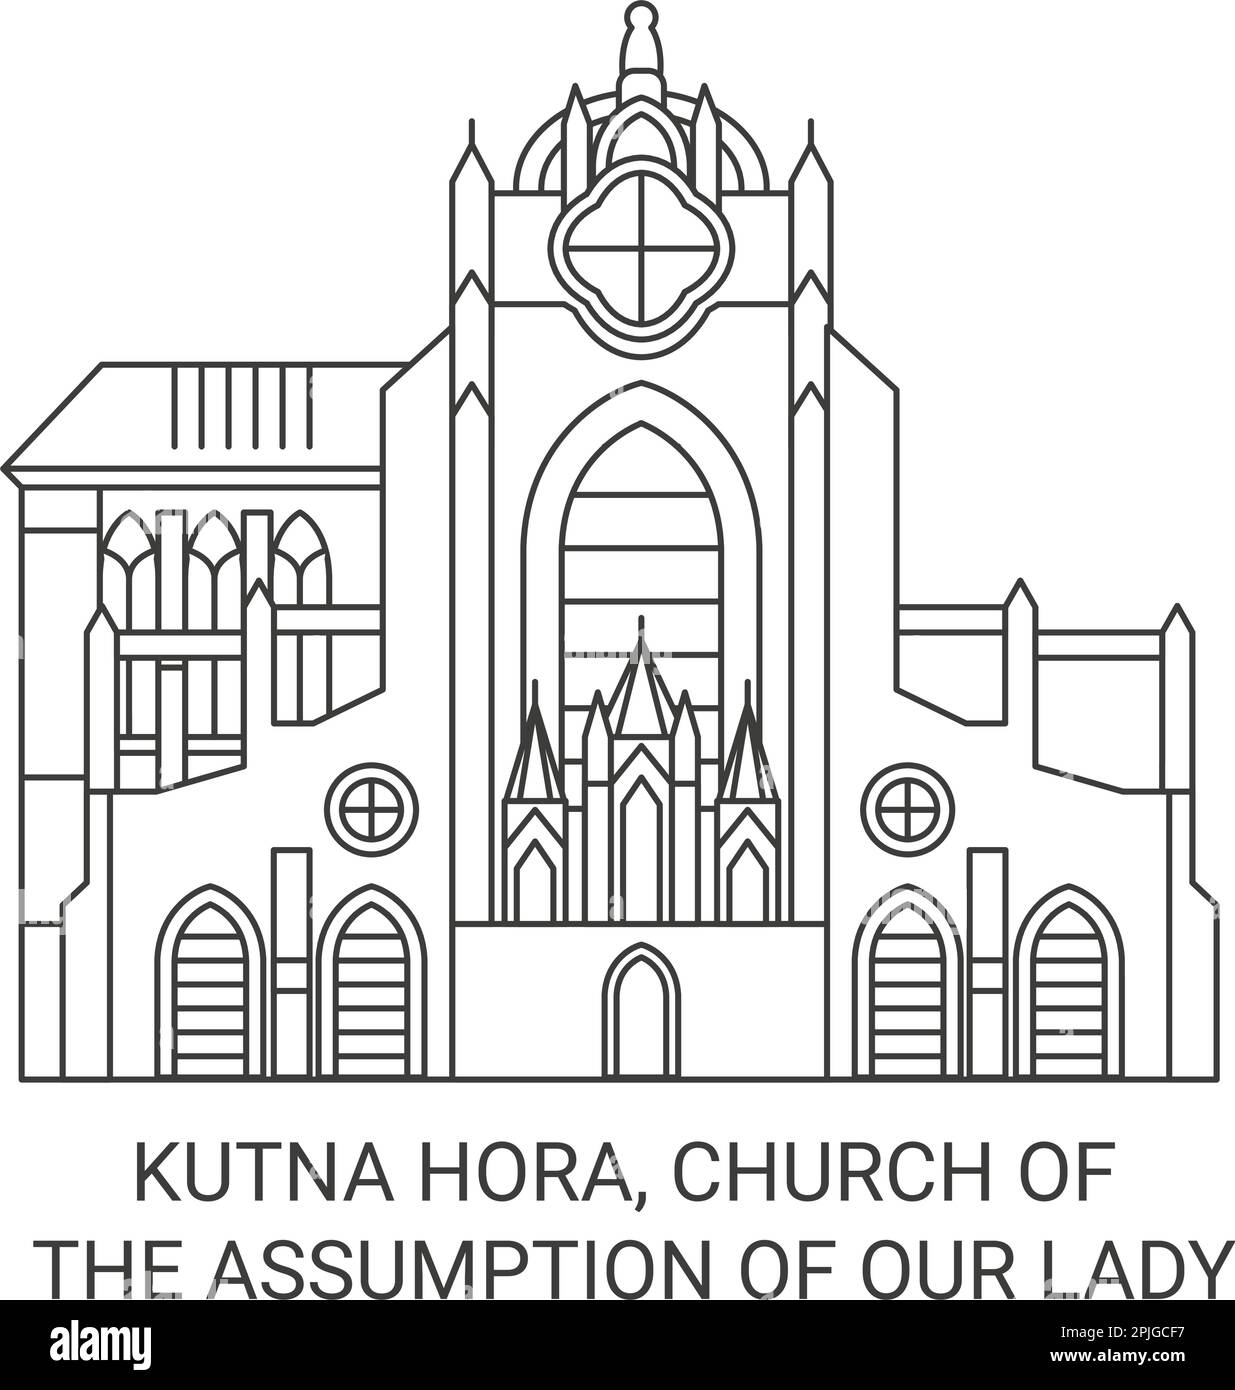 République tchèque, Kutna Hora, Église de l'Assomption de notre Dame illustration vectorielle de voyage Illustration de Vecteur